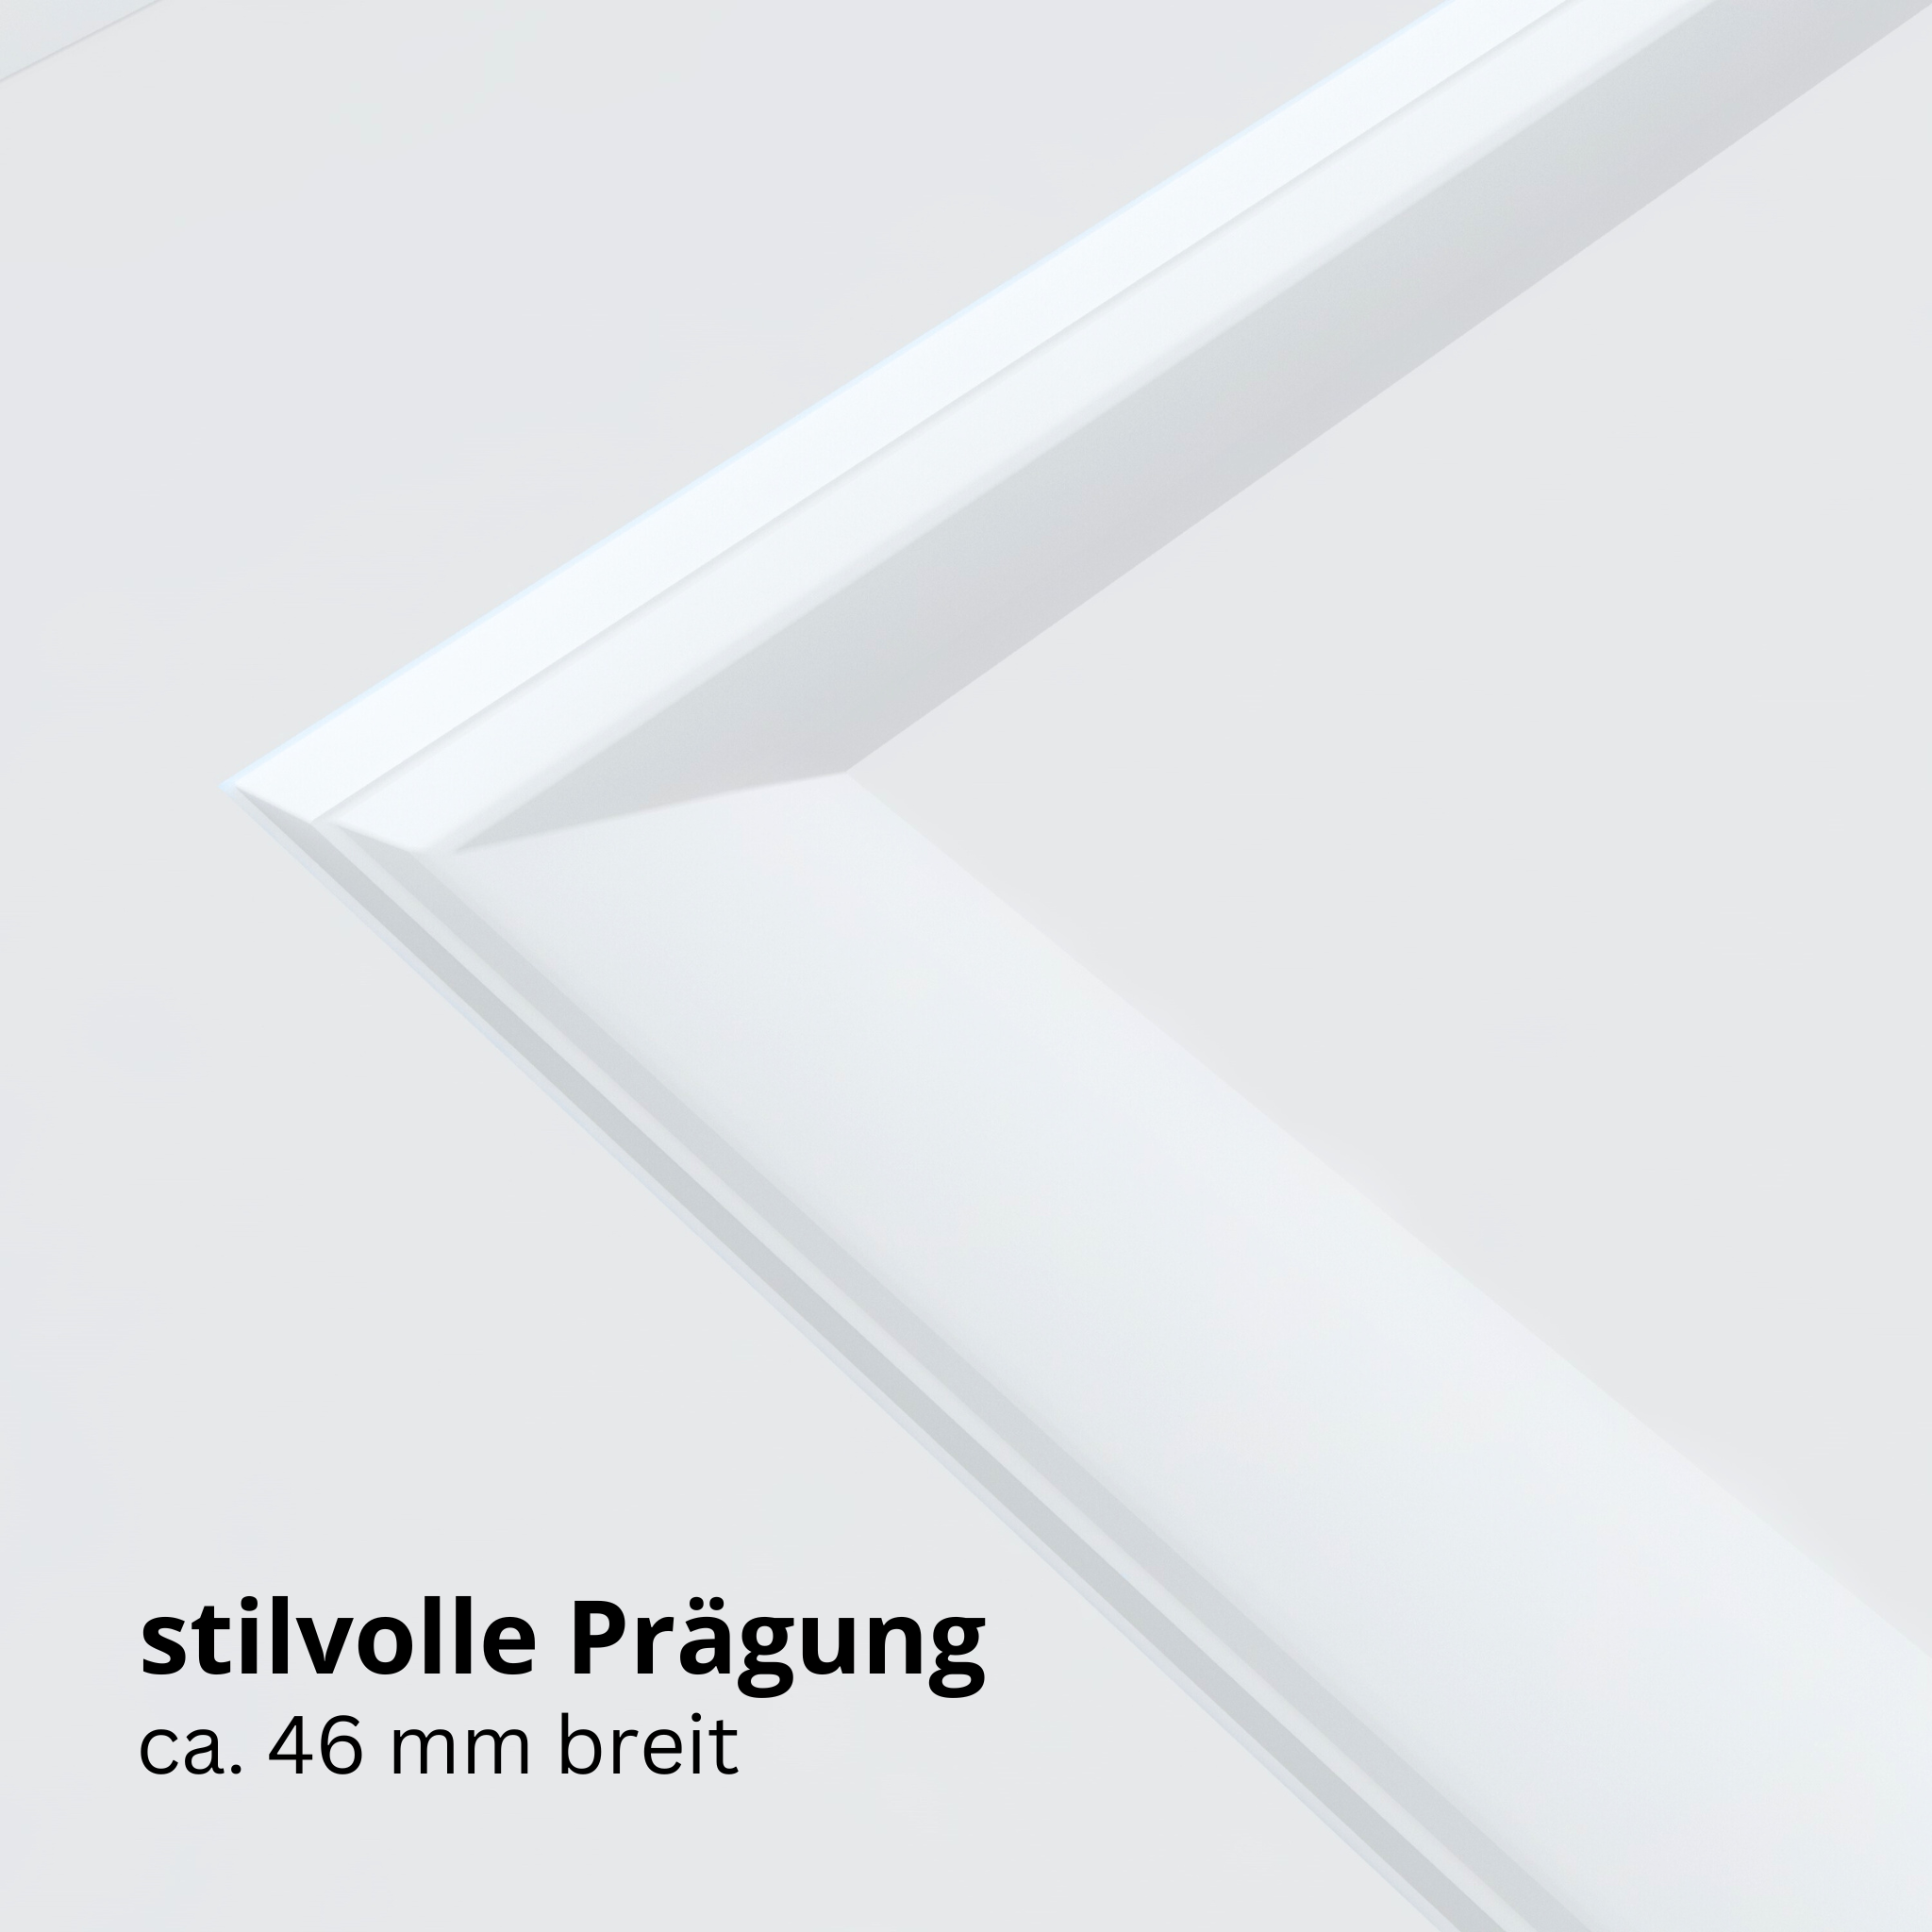 Wohnungseingangstür brillant-weiß 2 Kassetten Designkante SK1 / KK3 - Modell Stiltür K23